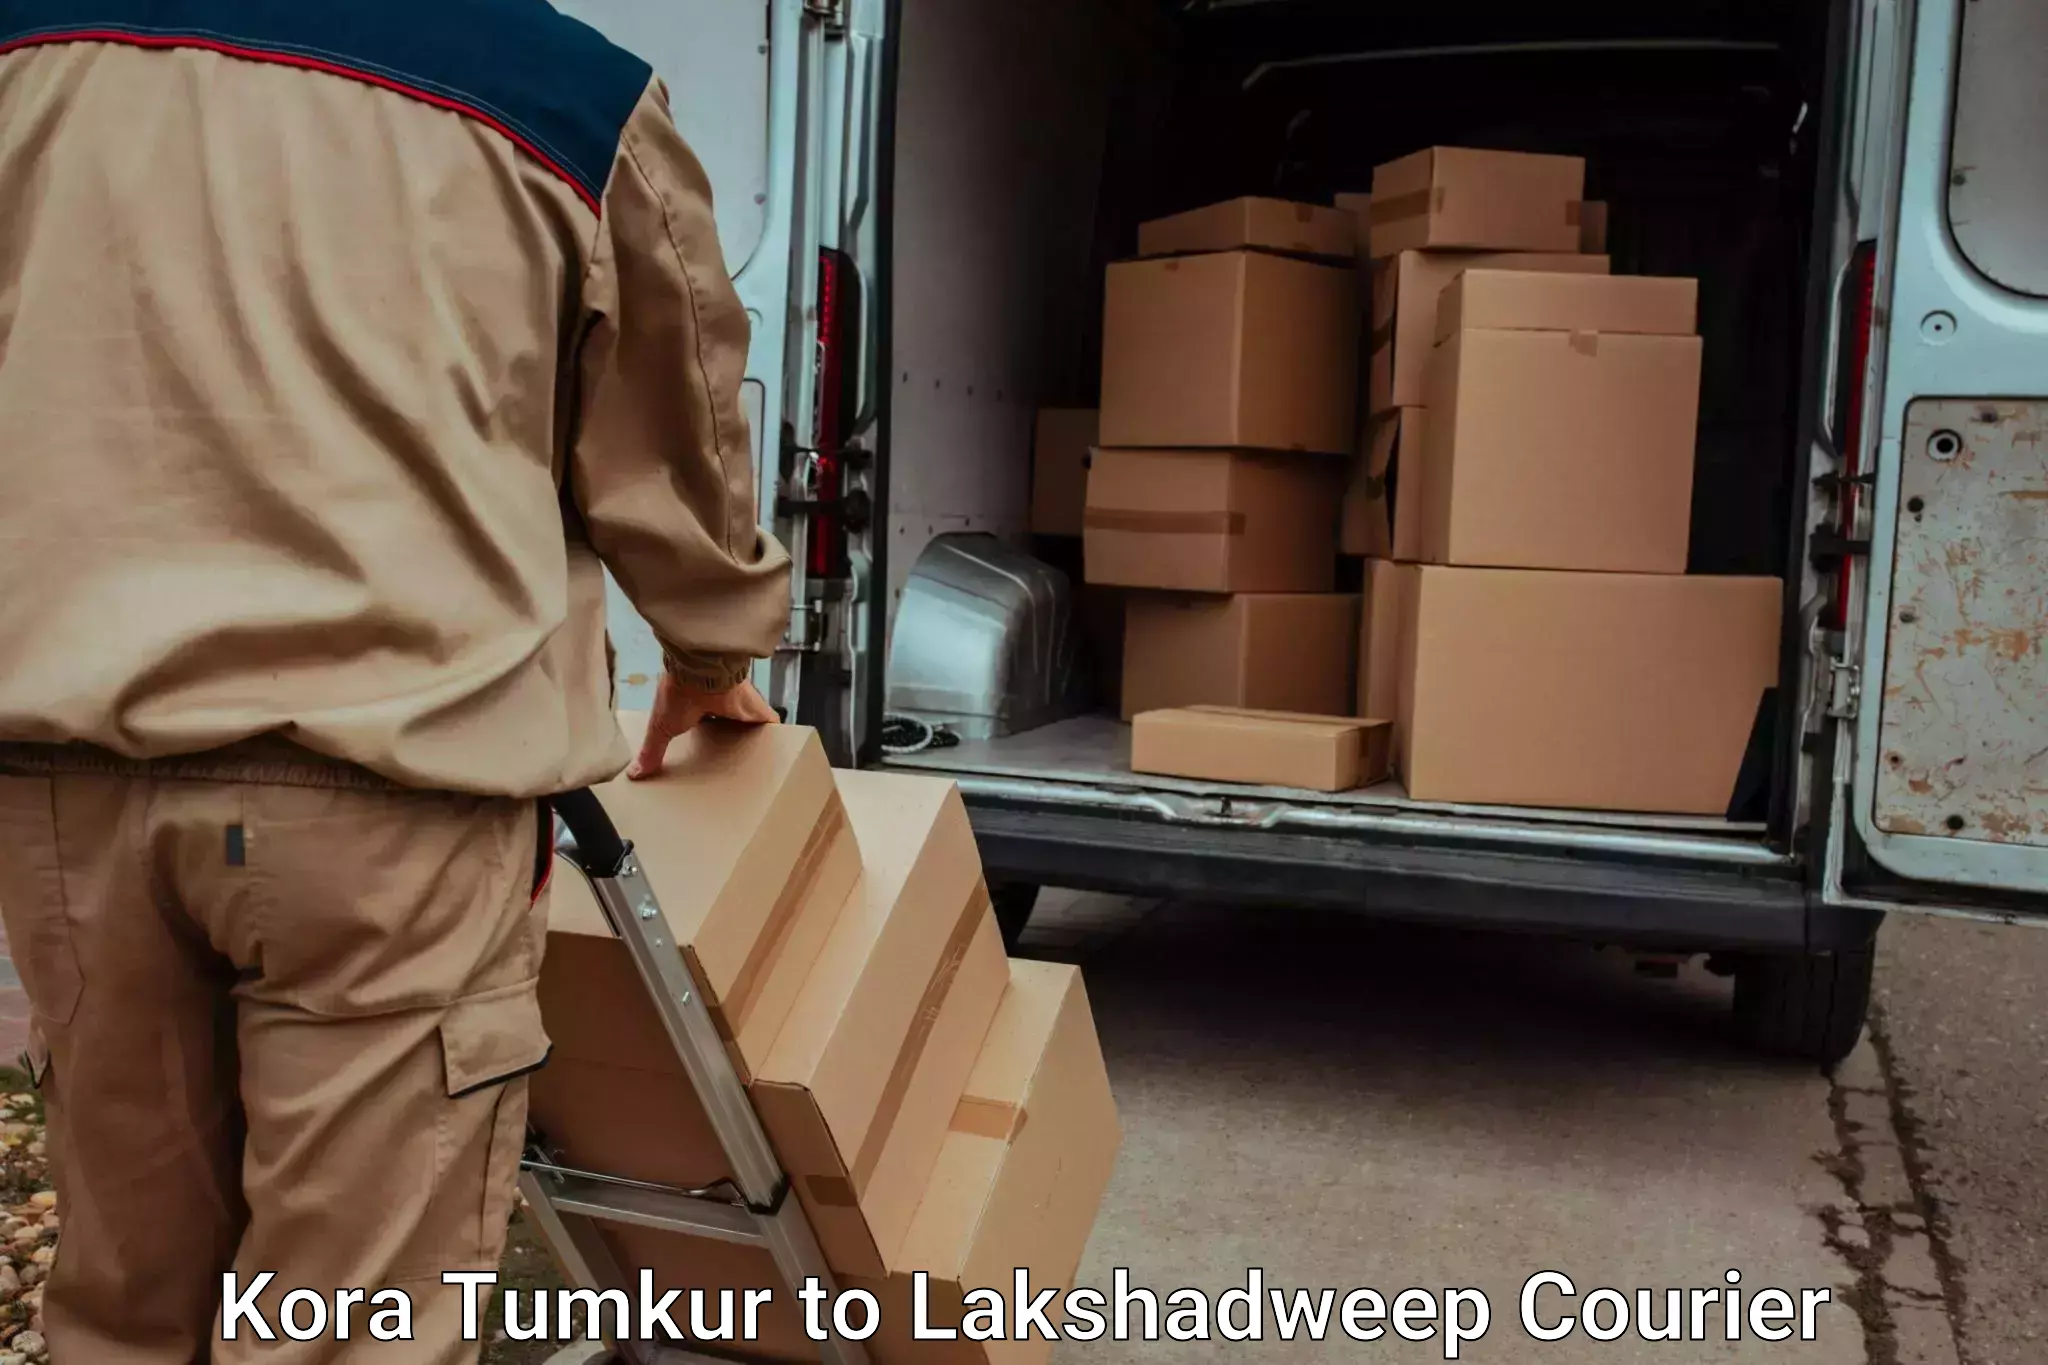 Baggage courier service Kora Tumkur to Lakshadweep